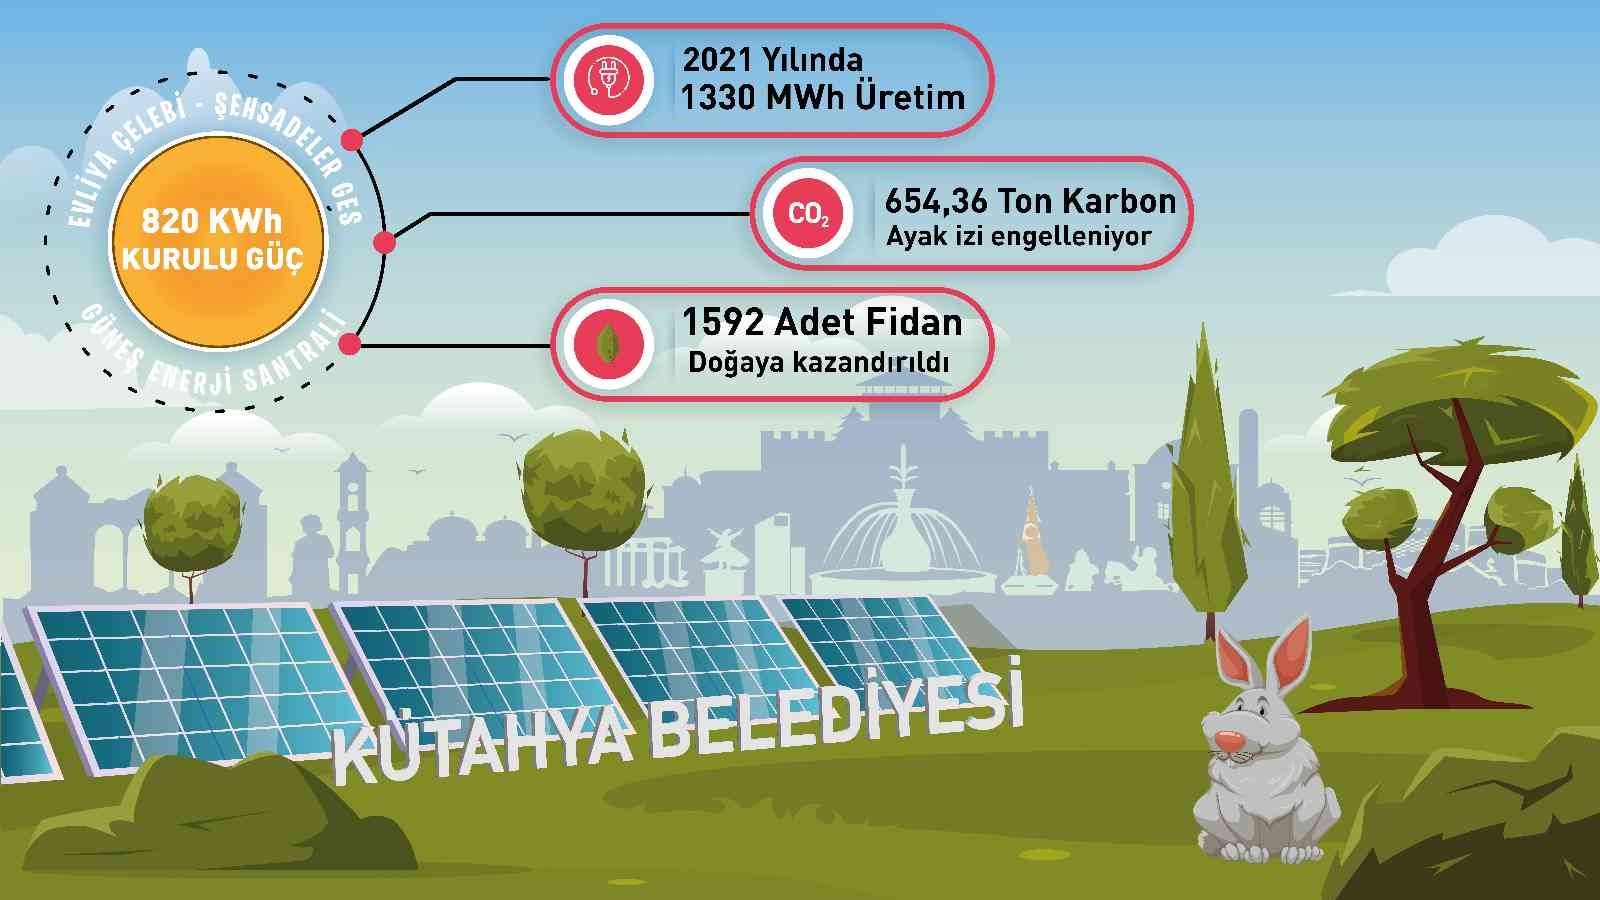 Bir yılda bin 330 MWh elektrik üretimi gerçekleştirildi #kutahya